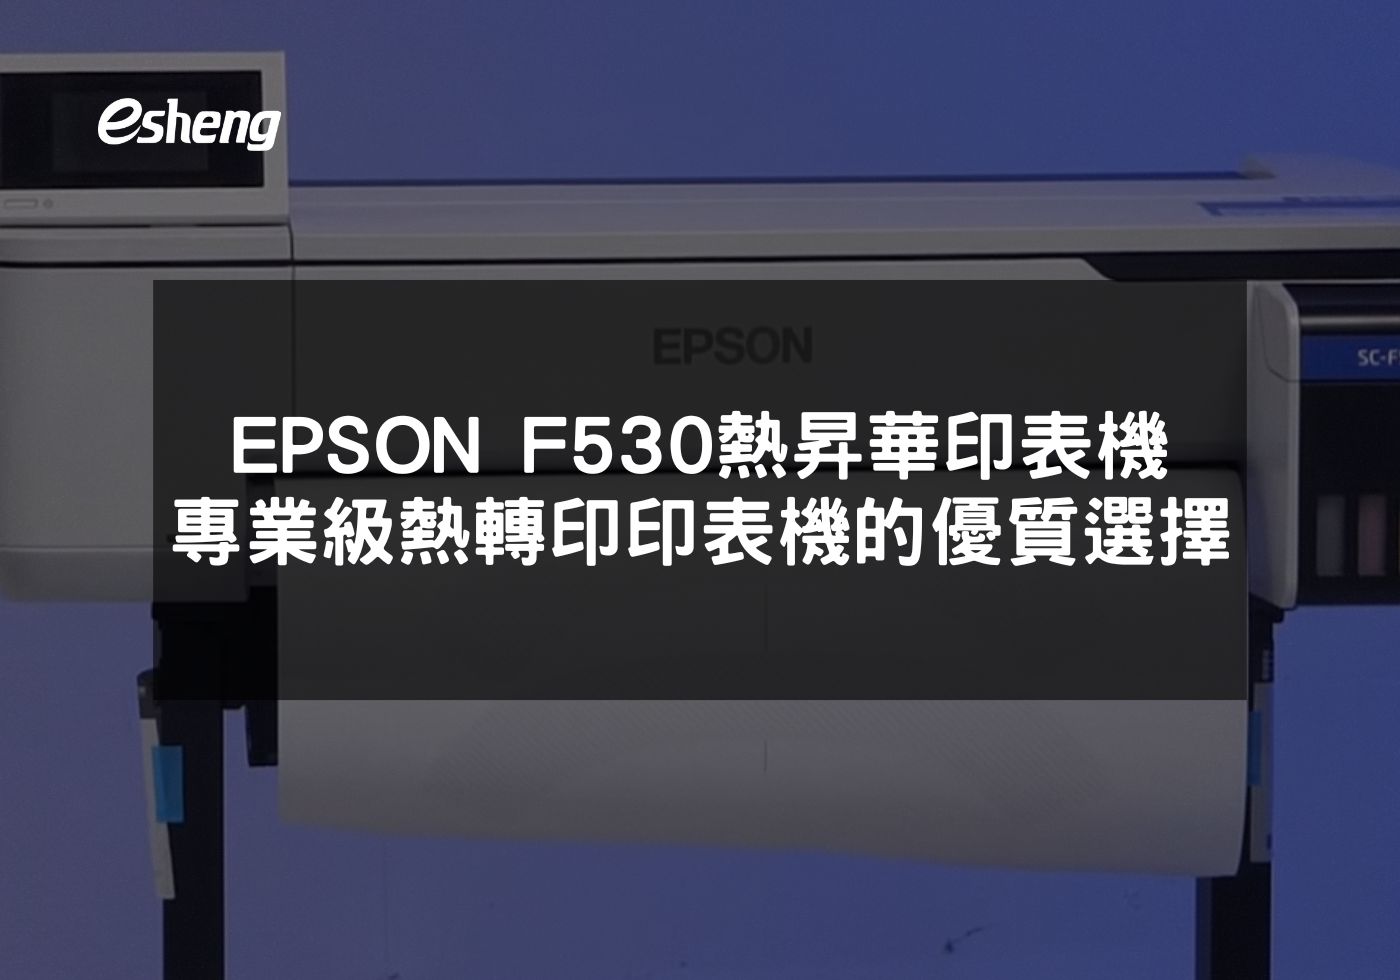 閱讀更多文章 EPSON F530 熱昇華印表機 專業級熱轉印印表機的優質選擇